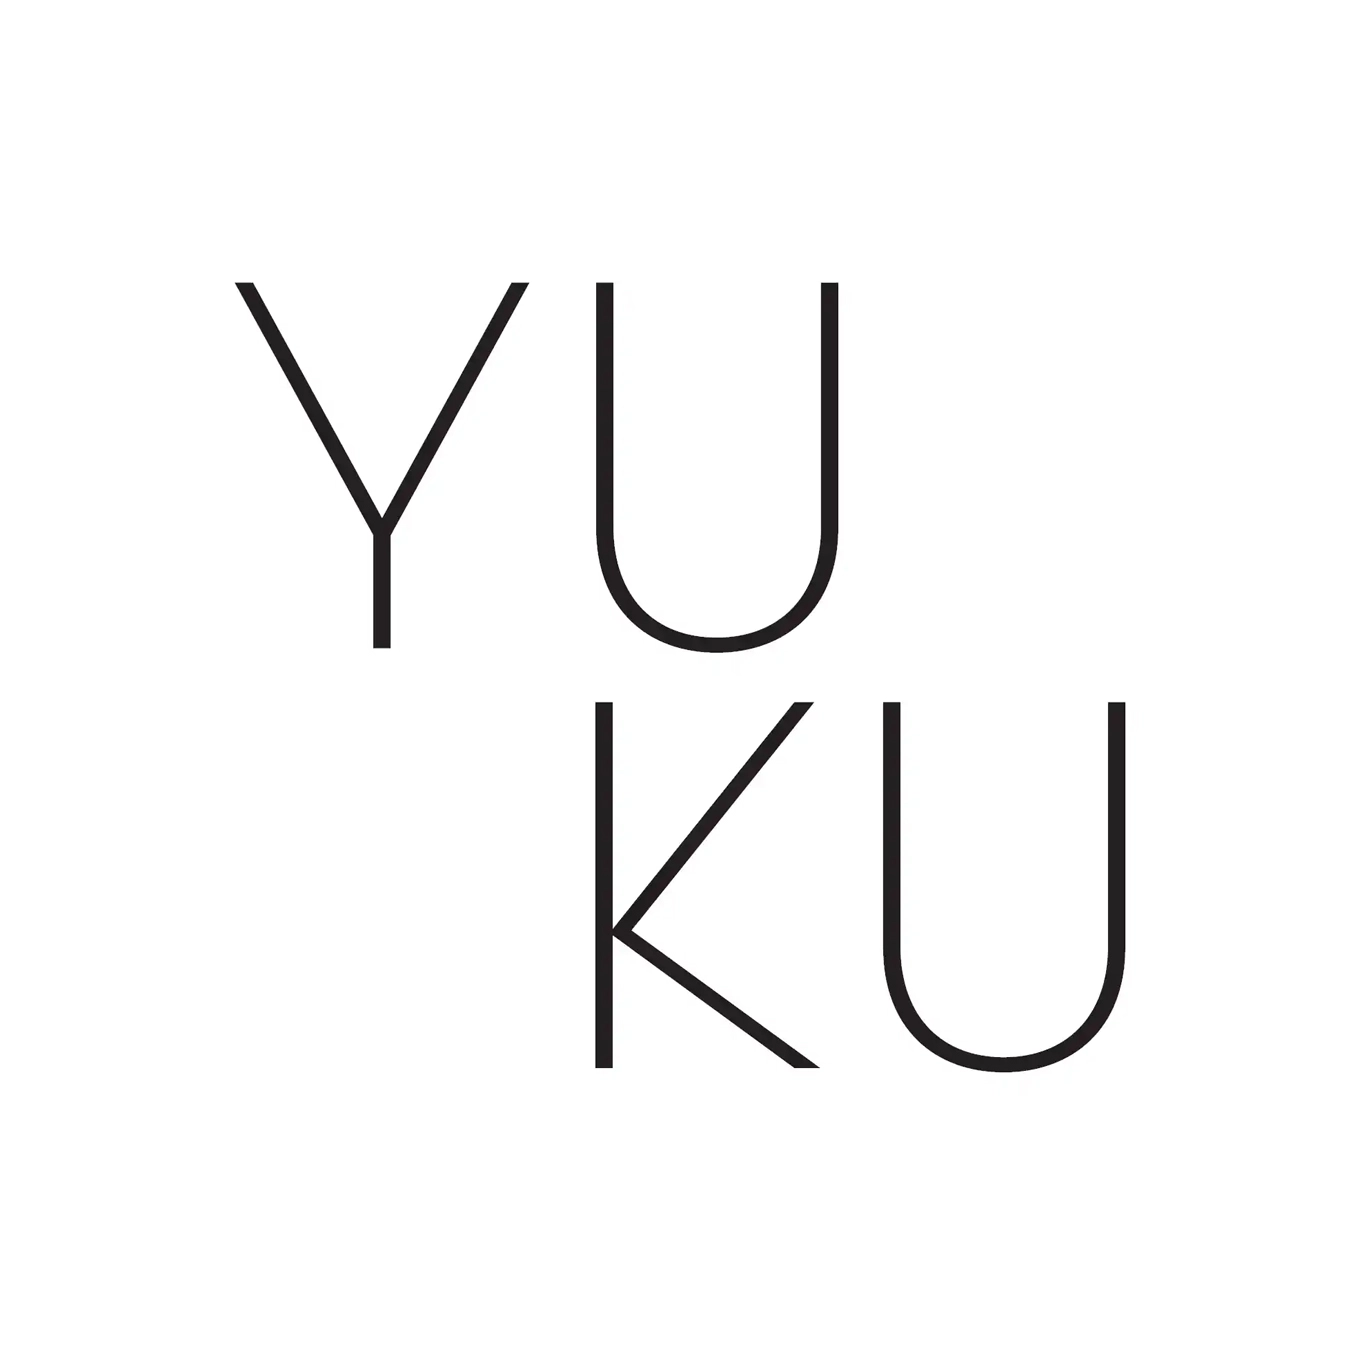 YUKU Logo